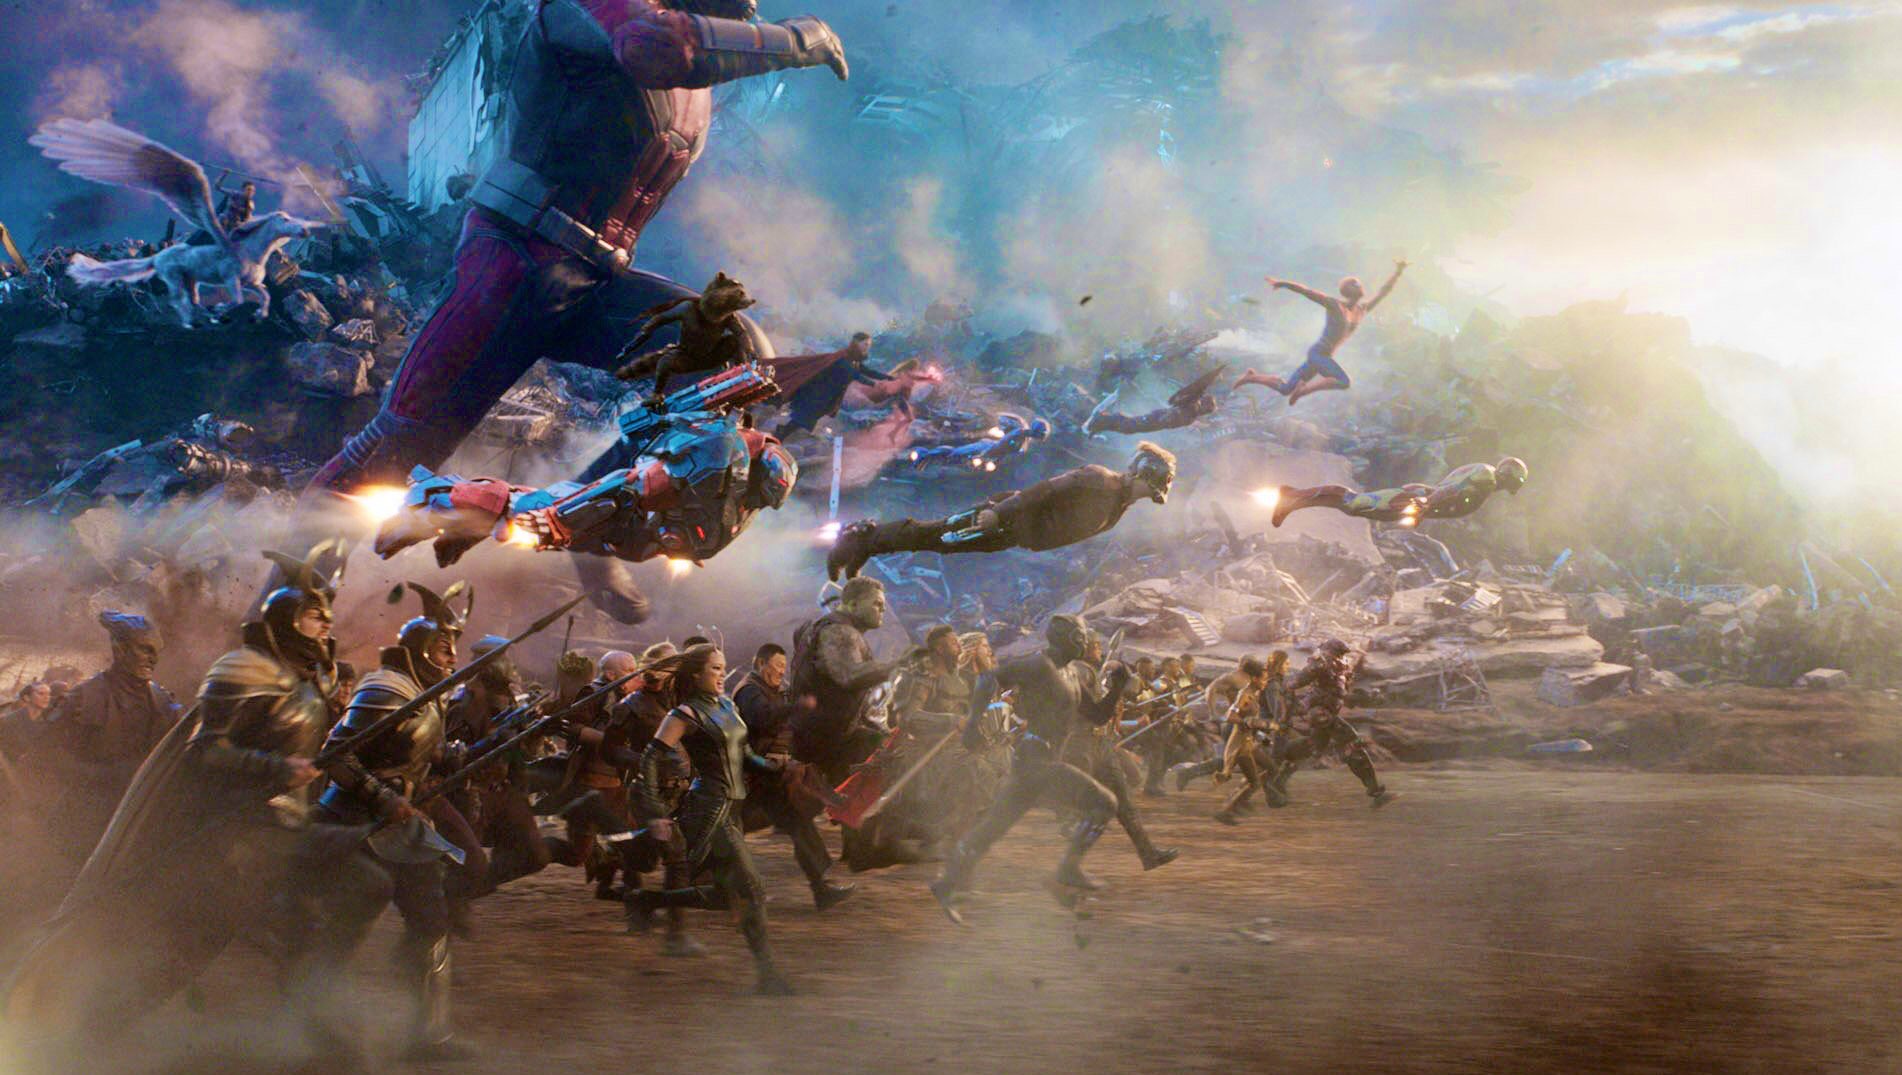 4K wallpaper: Avengers Endgame Battle Scene Wallpaper